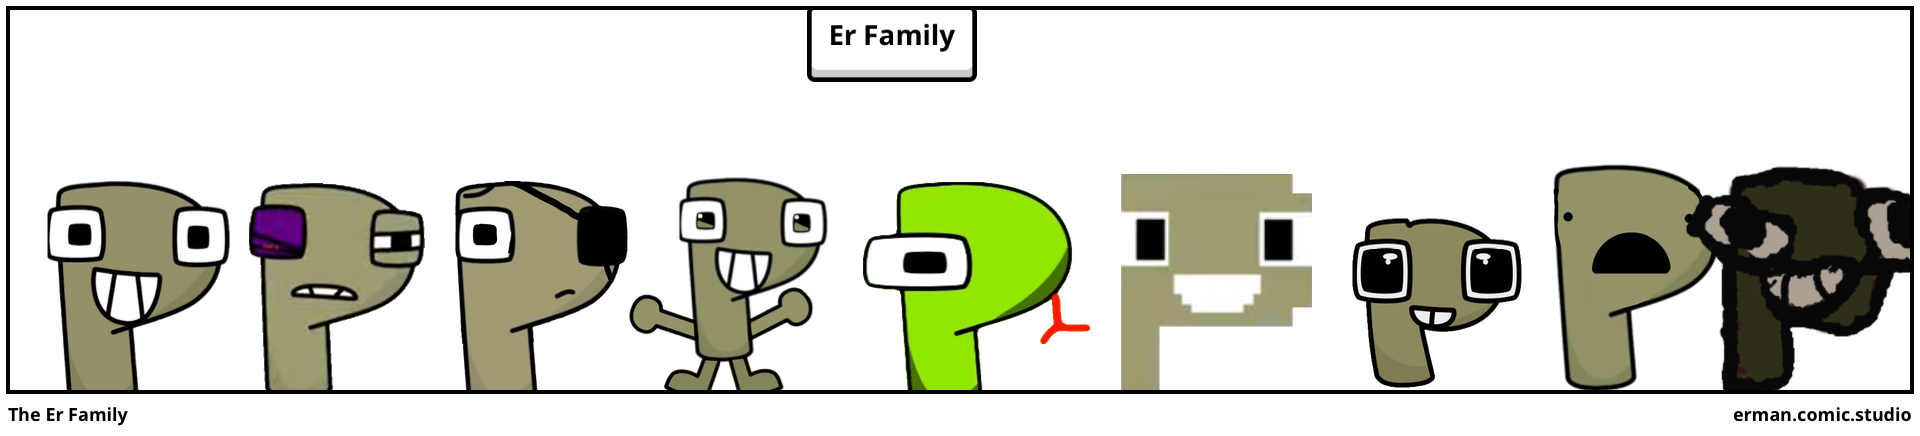 The Er Family